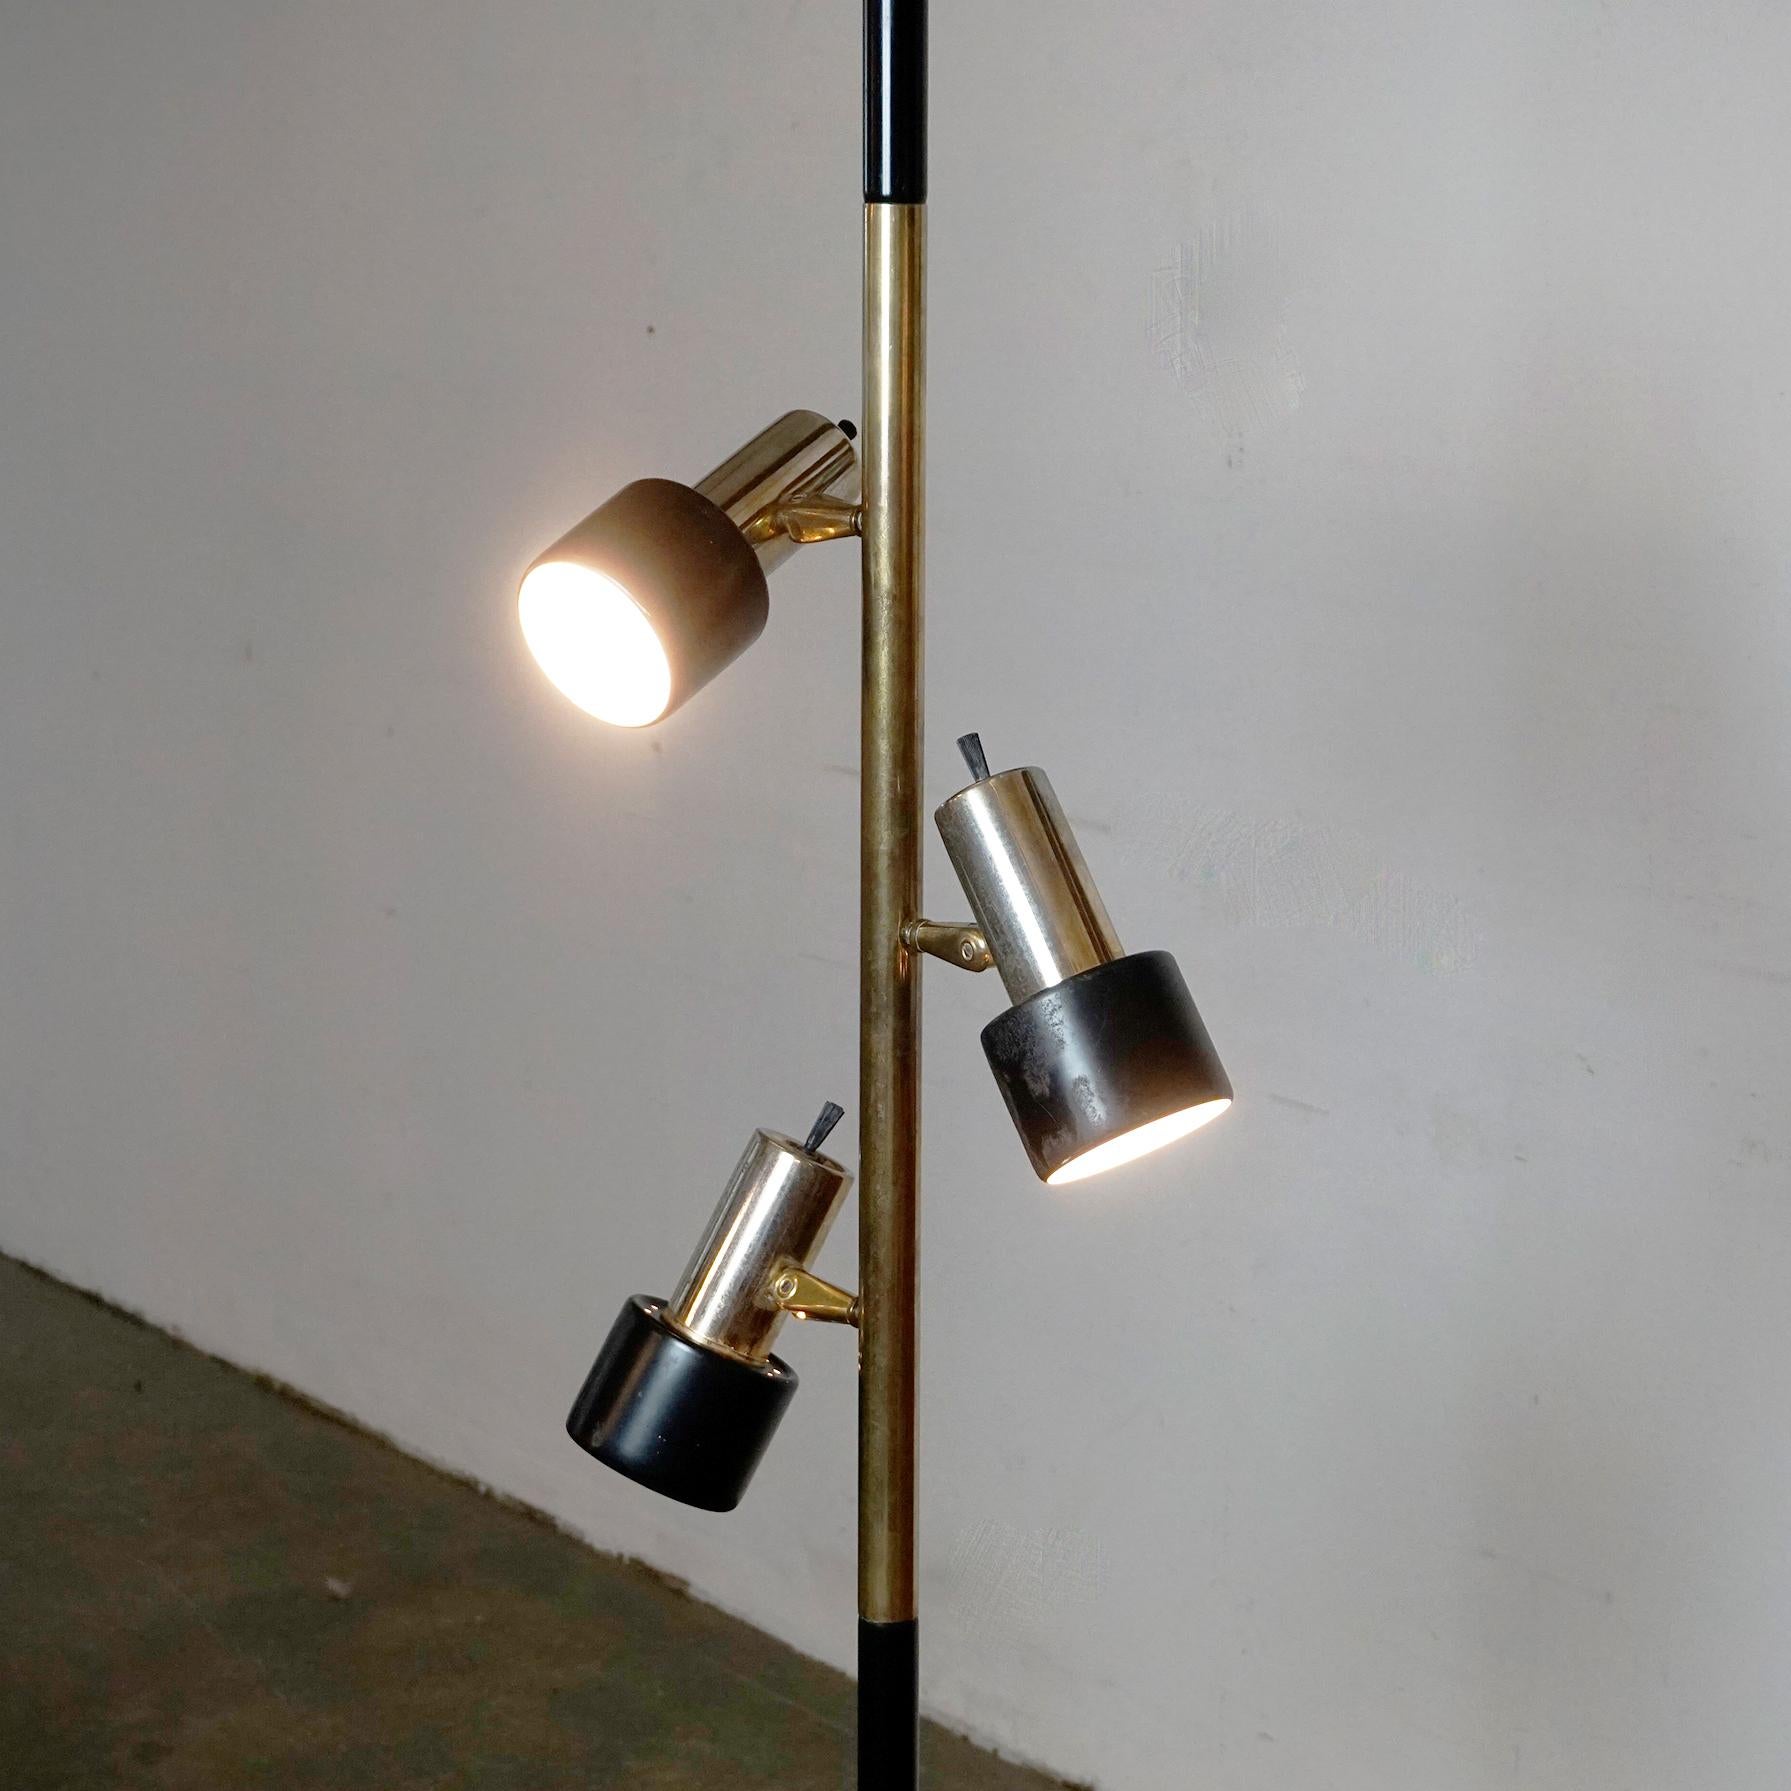 Diese schöne und seltene Stablampe mit drei verstellbaren Spots wurde in den 1960er Jahren entworfen und hergestellt. Sie sieht den von Hala Zeist in den Niederlanden in den 1960er Jahren hergestellten Leuchten sehr ähnlich. 
Diese Lampe muss